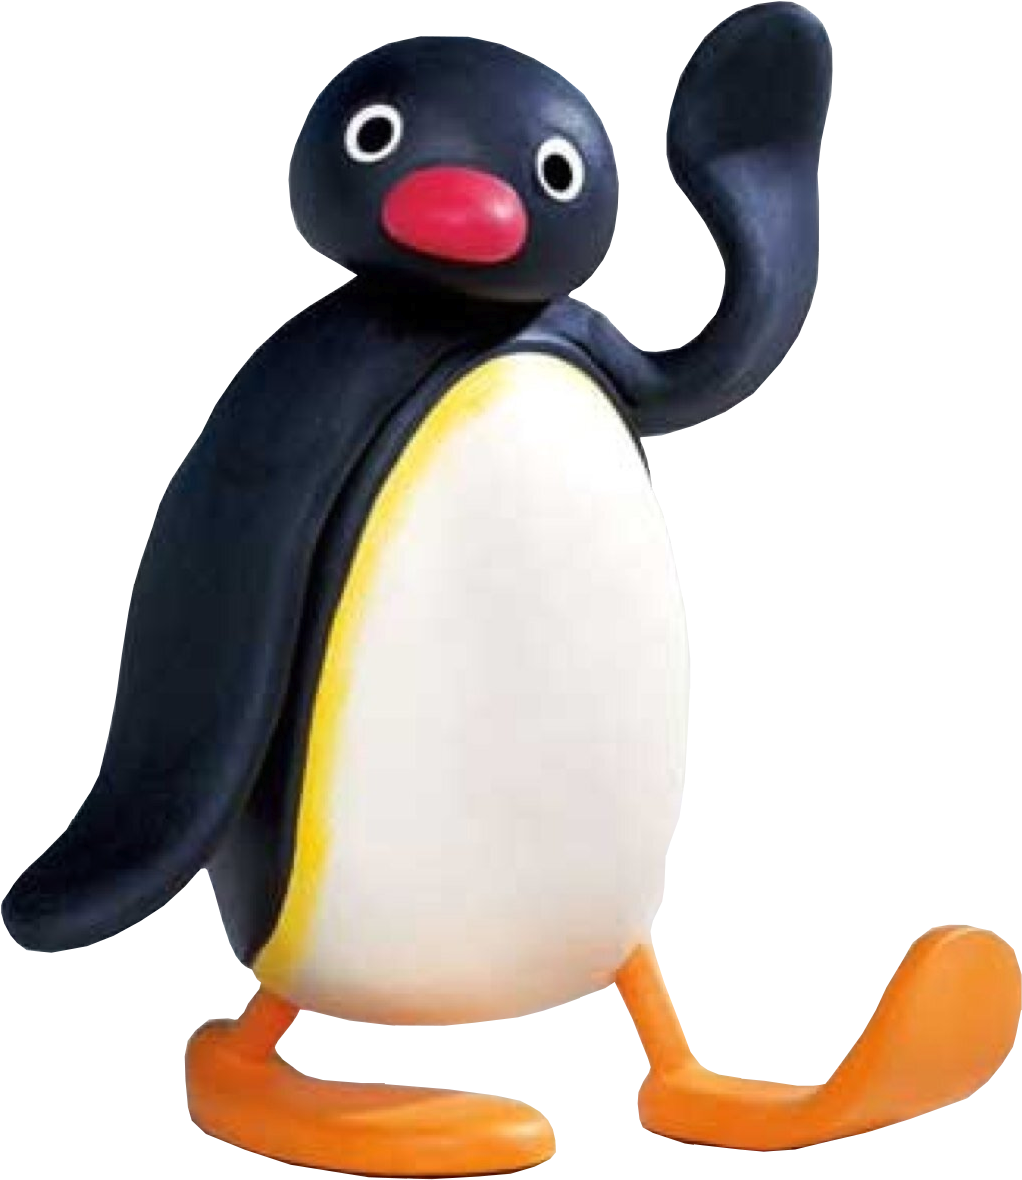 핑9 - Pingu The Penguin (1252x1252)